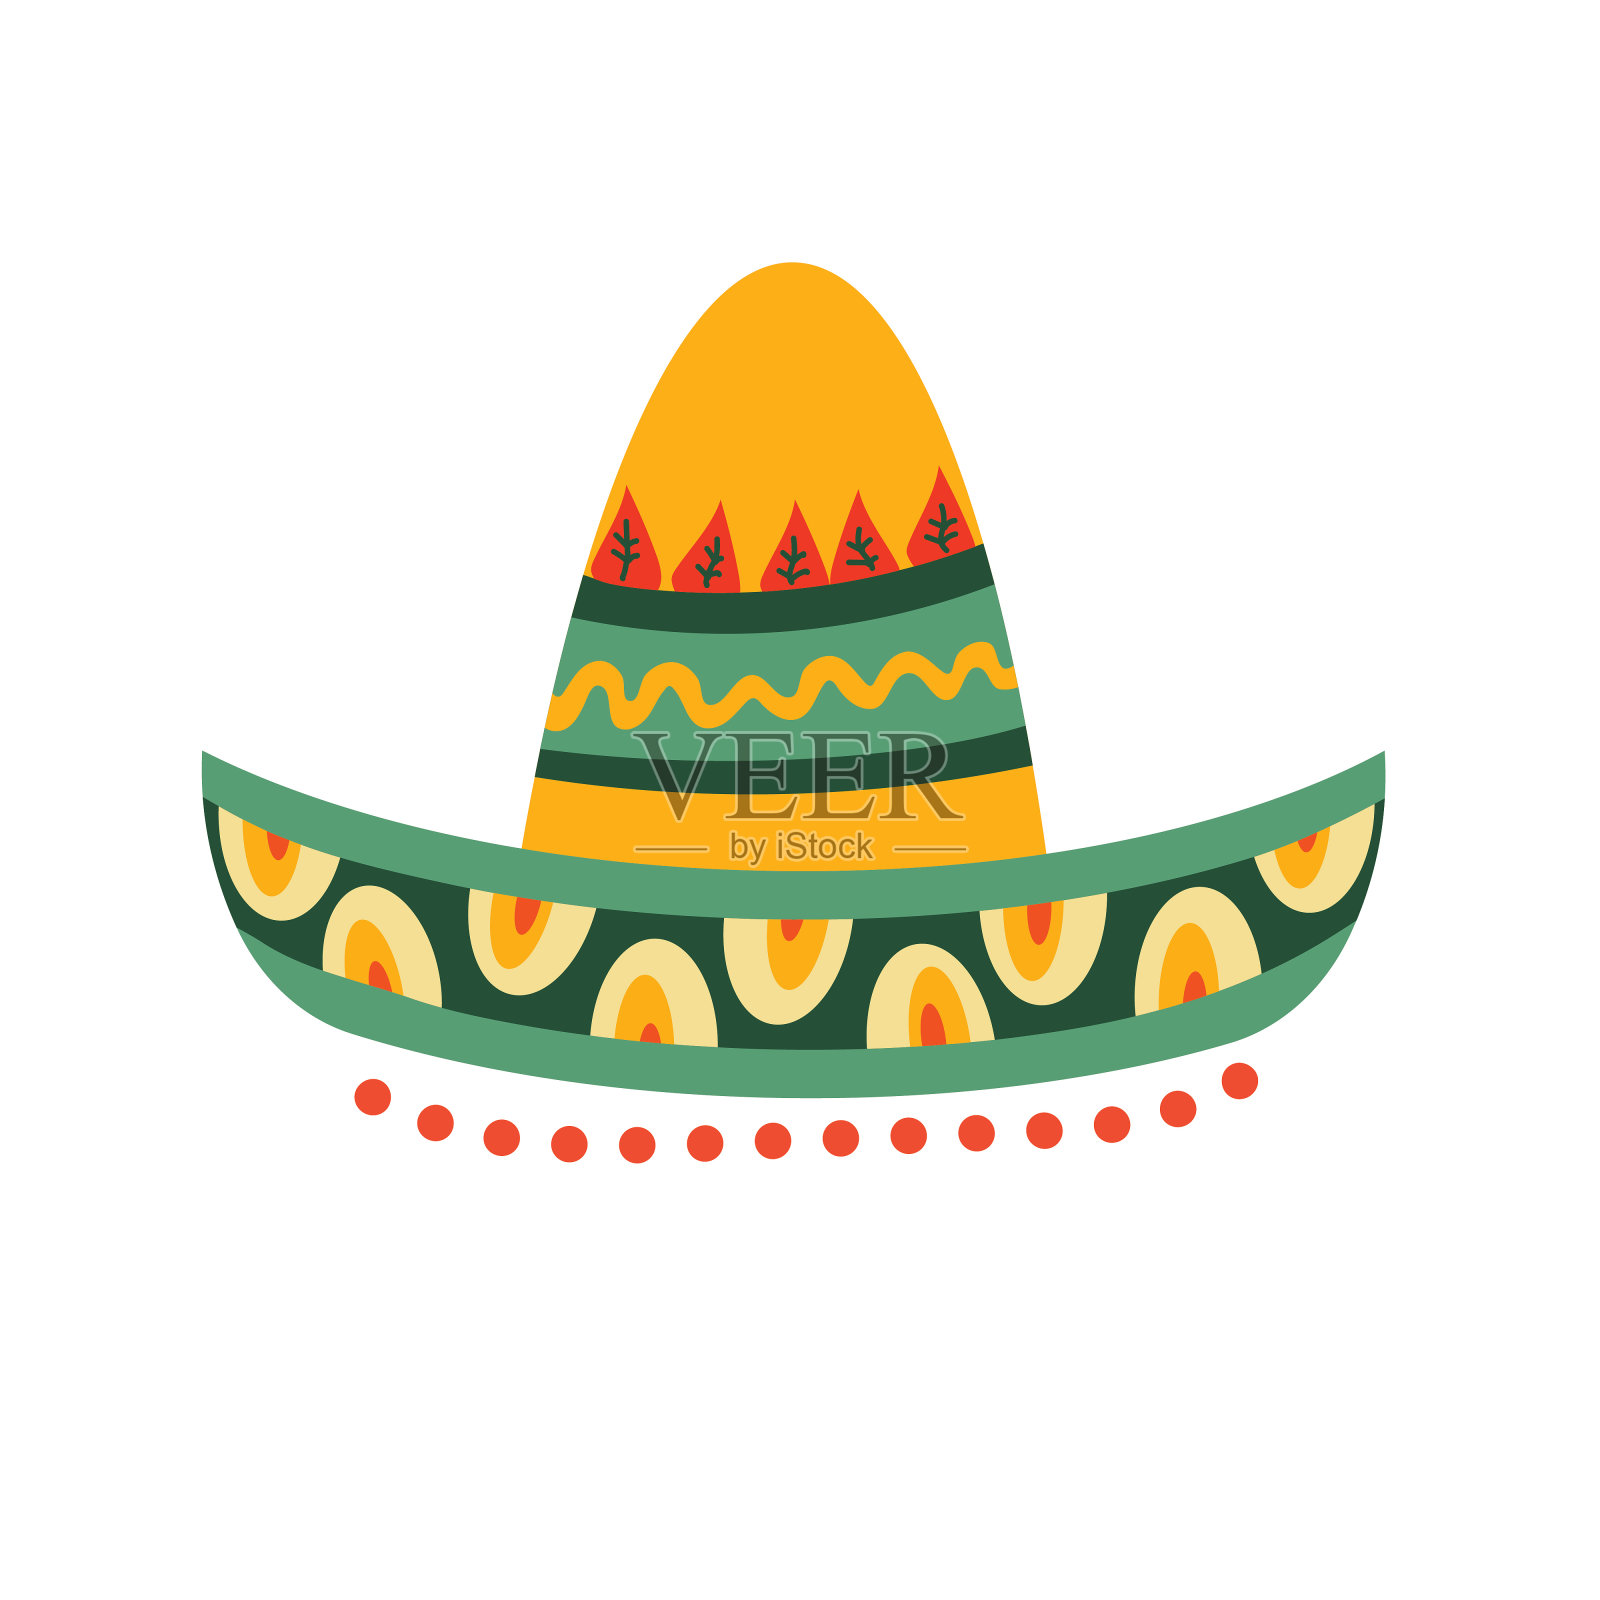 墨西哥的帽子 库存图片. 图片 包括有 纪念品, 布料, 拉丁语, 墨西哥, 玛雅, 赞誉, 颜色, 销售额 - 19870749